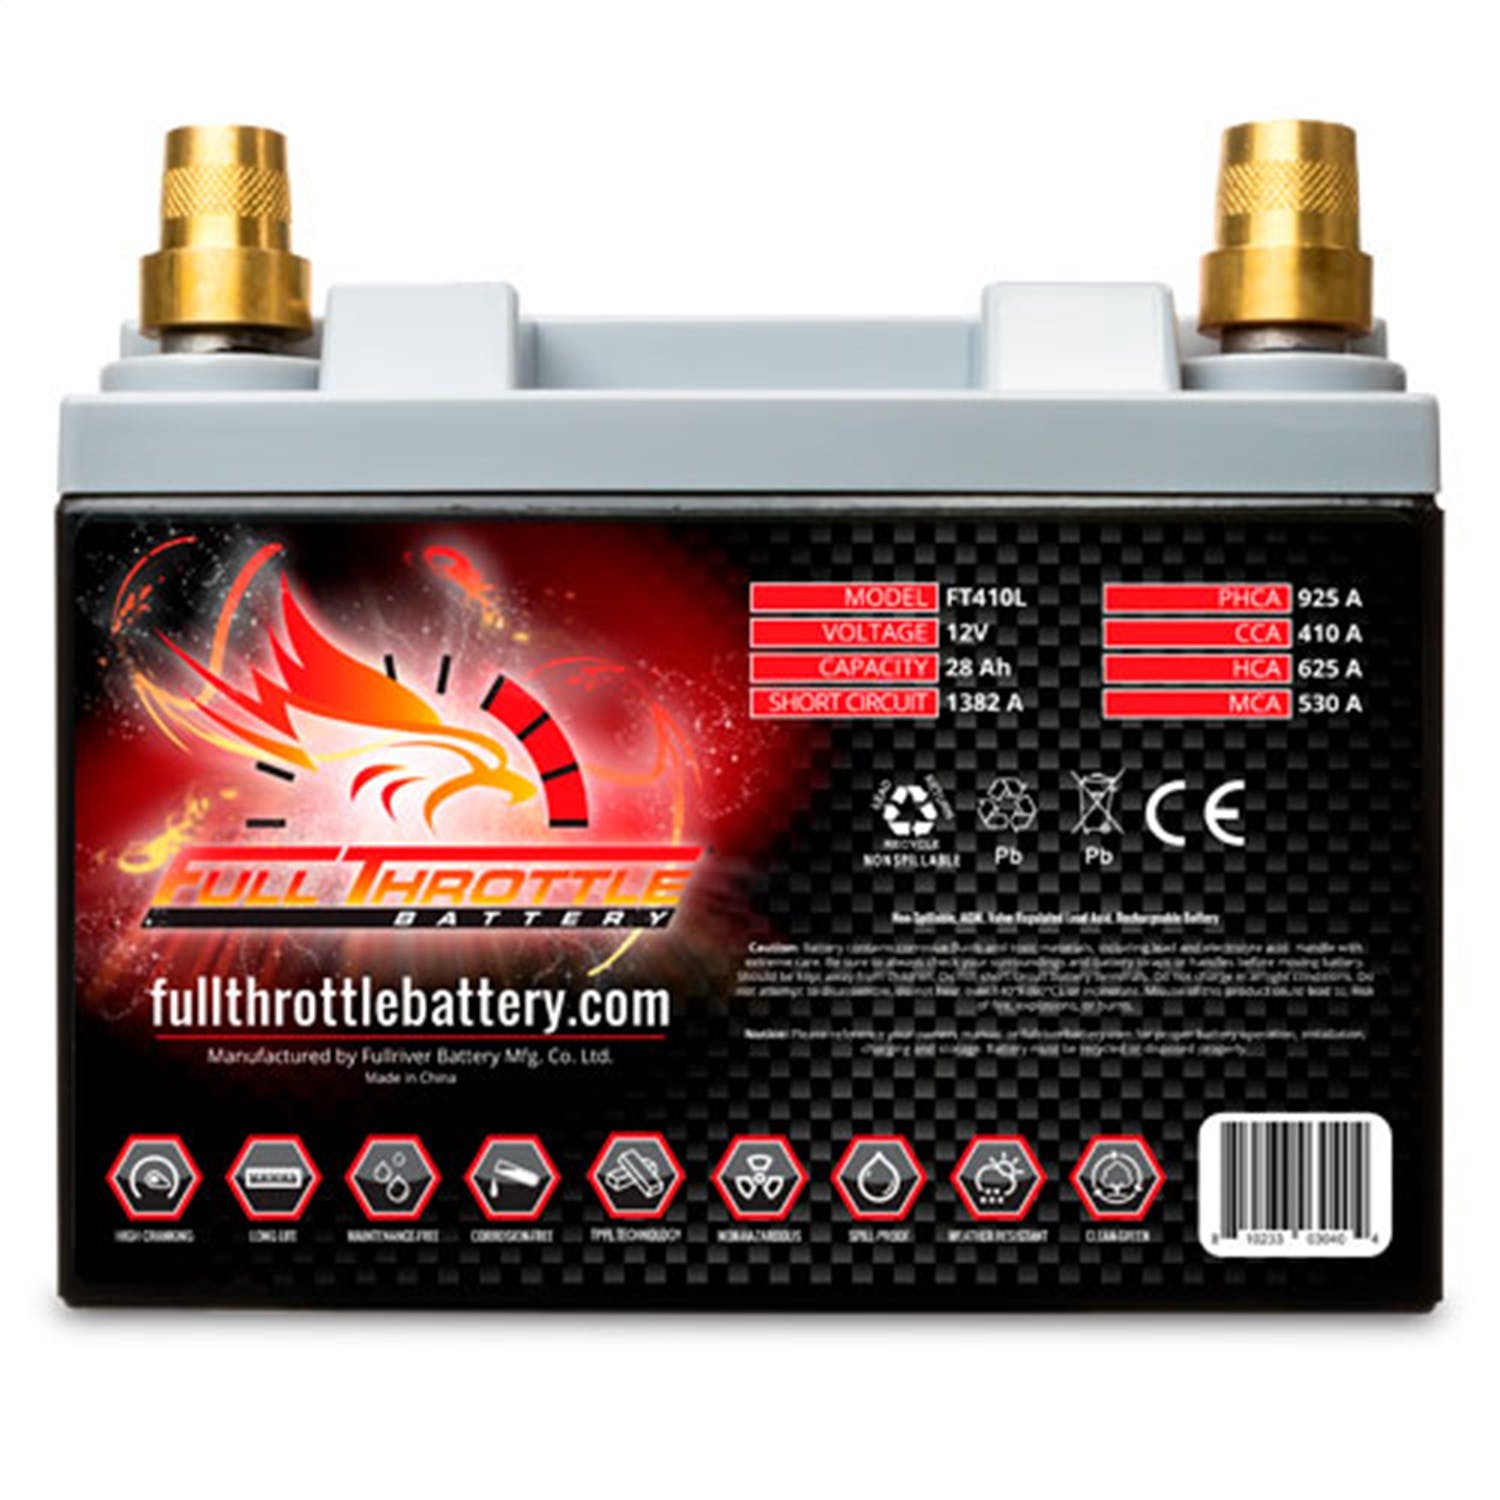 Fullriver Battery FT410L Full Throttle 12V Power Sports Battery